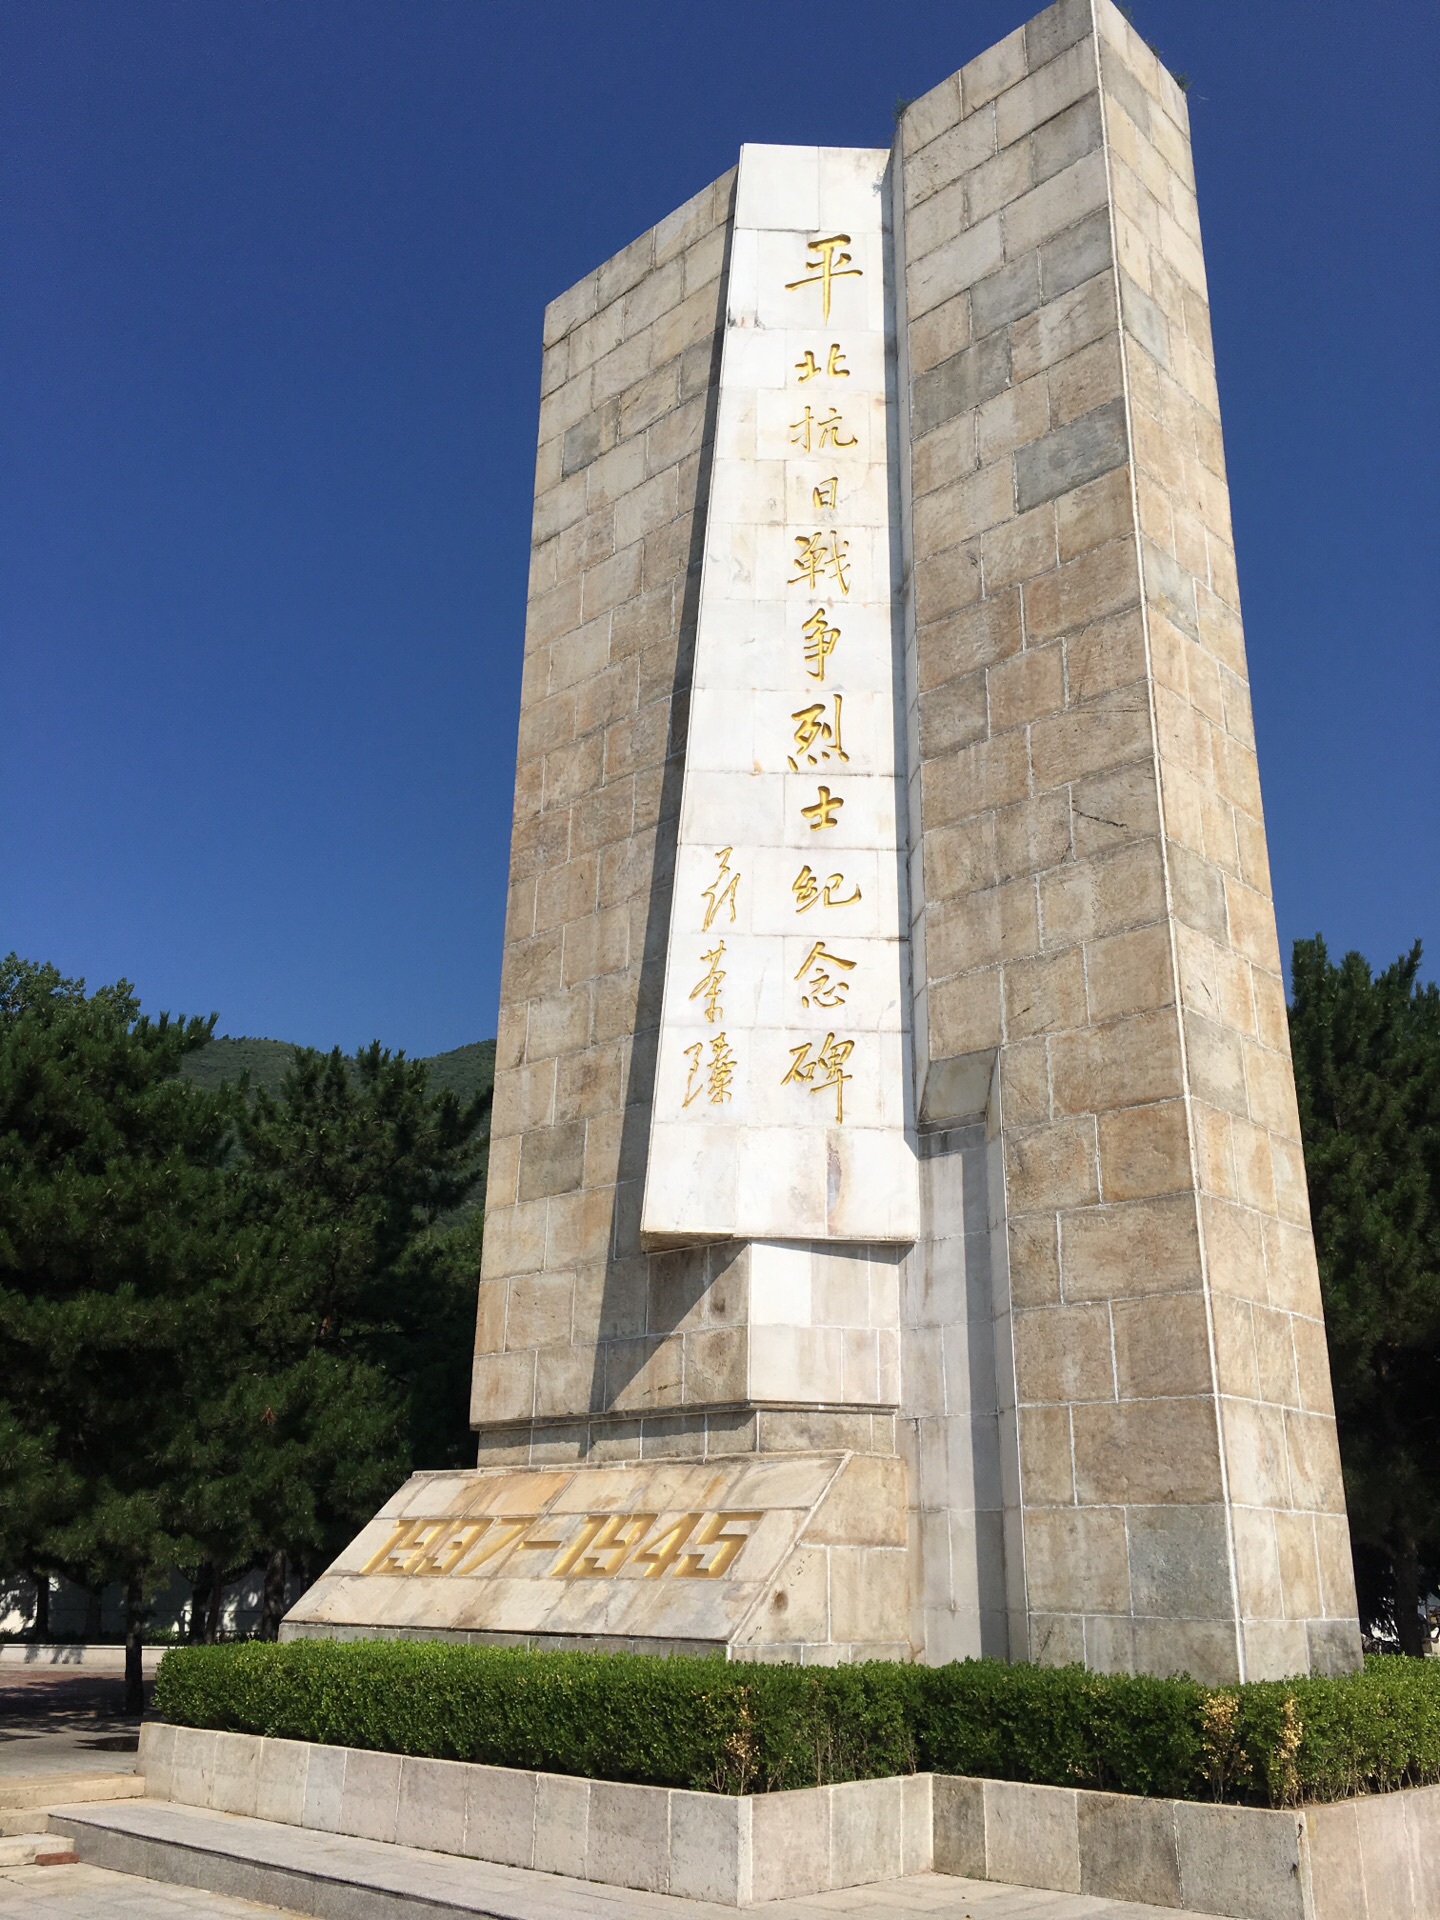 【携程攻略】北京中国人民抗日战争纪念馆景点,中国人民抗日战争纪念馆在宛平城里，刷身份证换票就可以进入参观。馆…